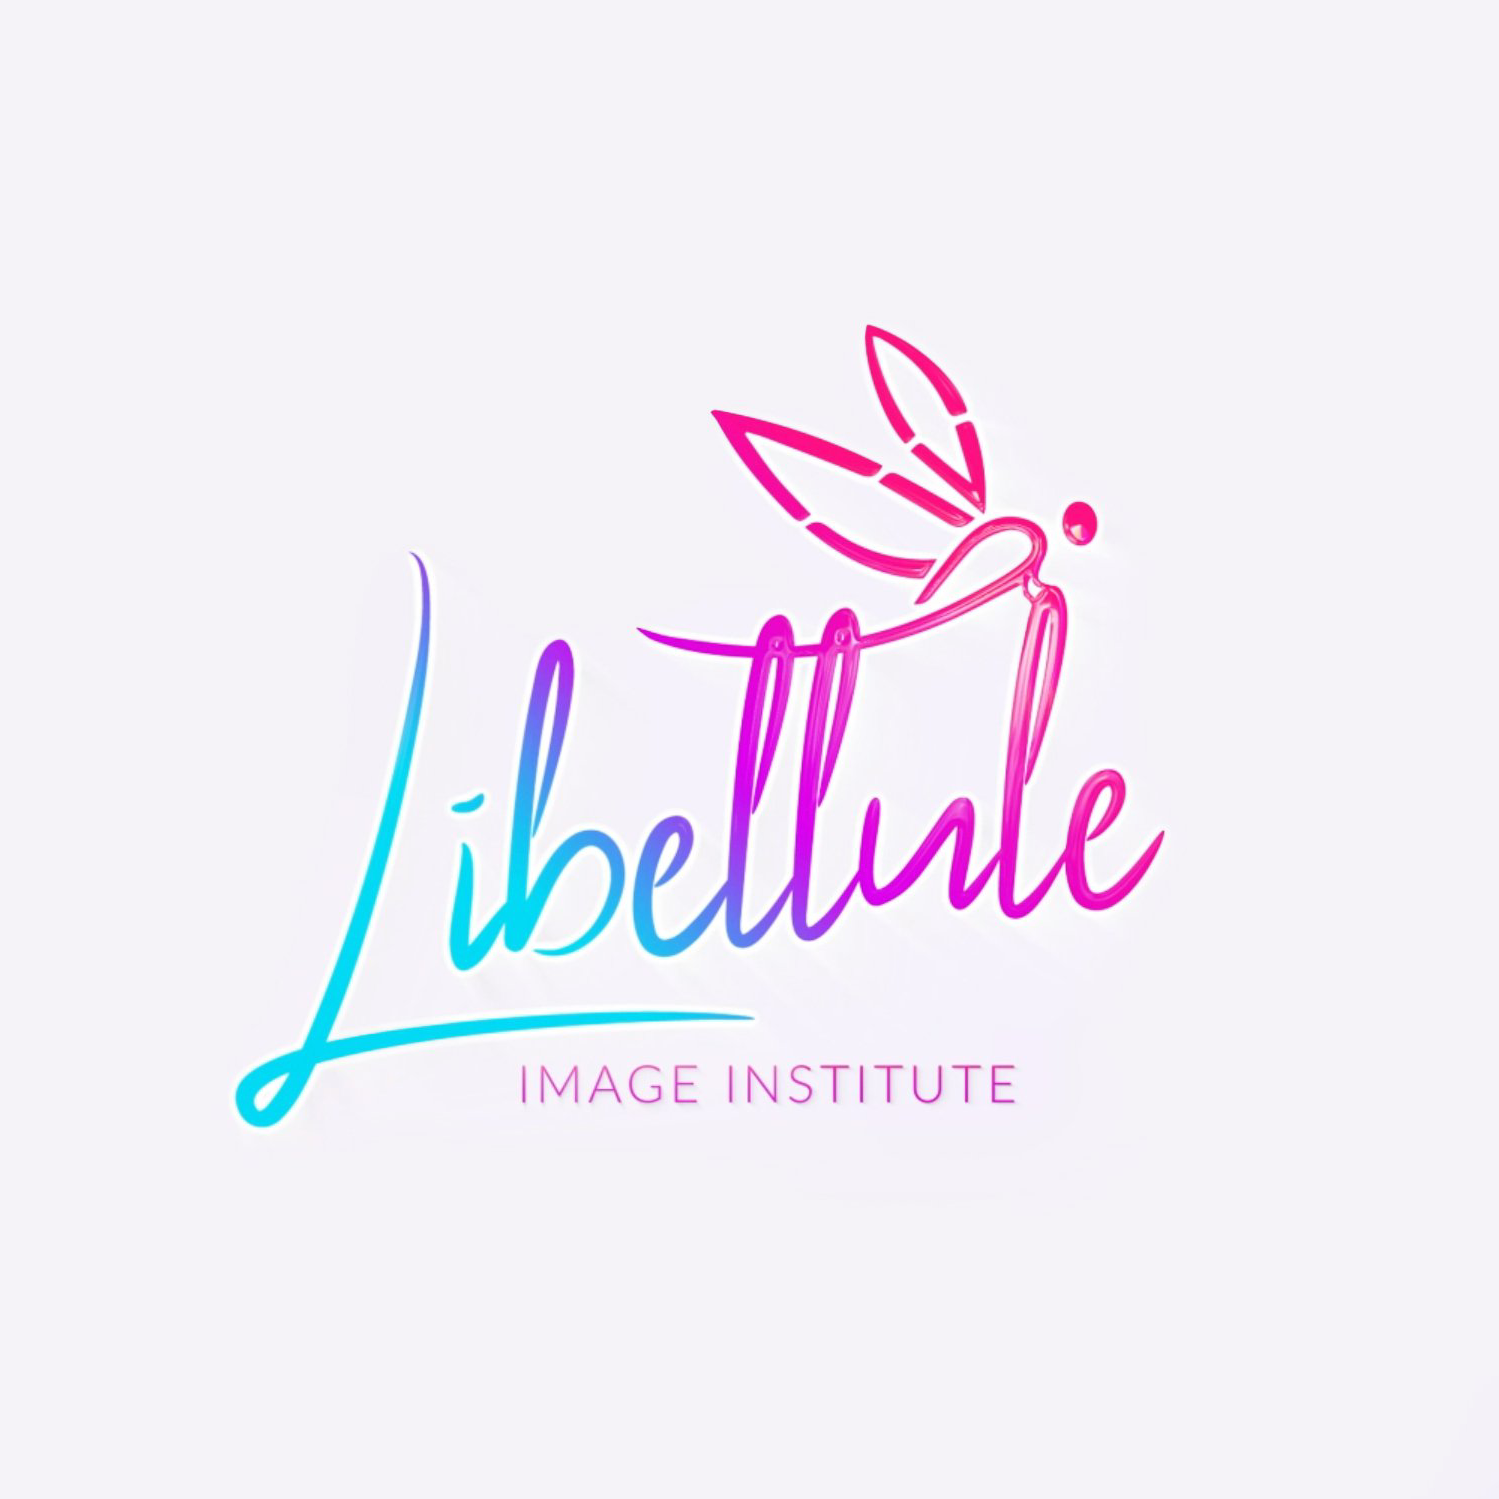 Libellule Image Institute Team